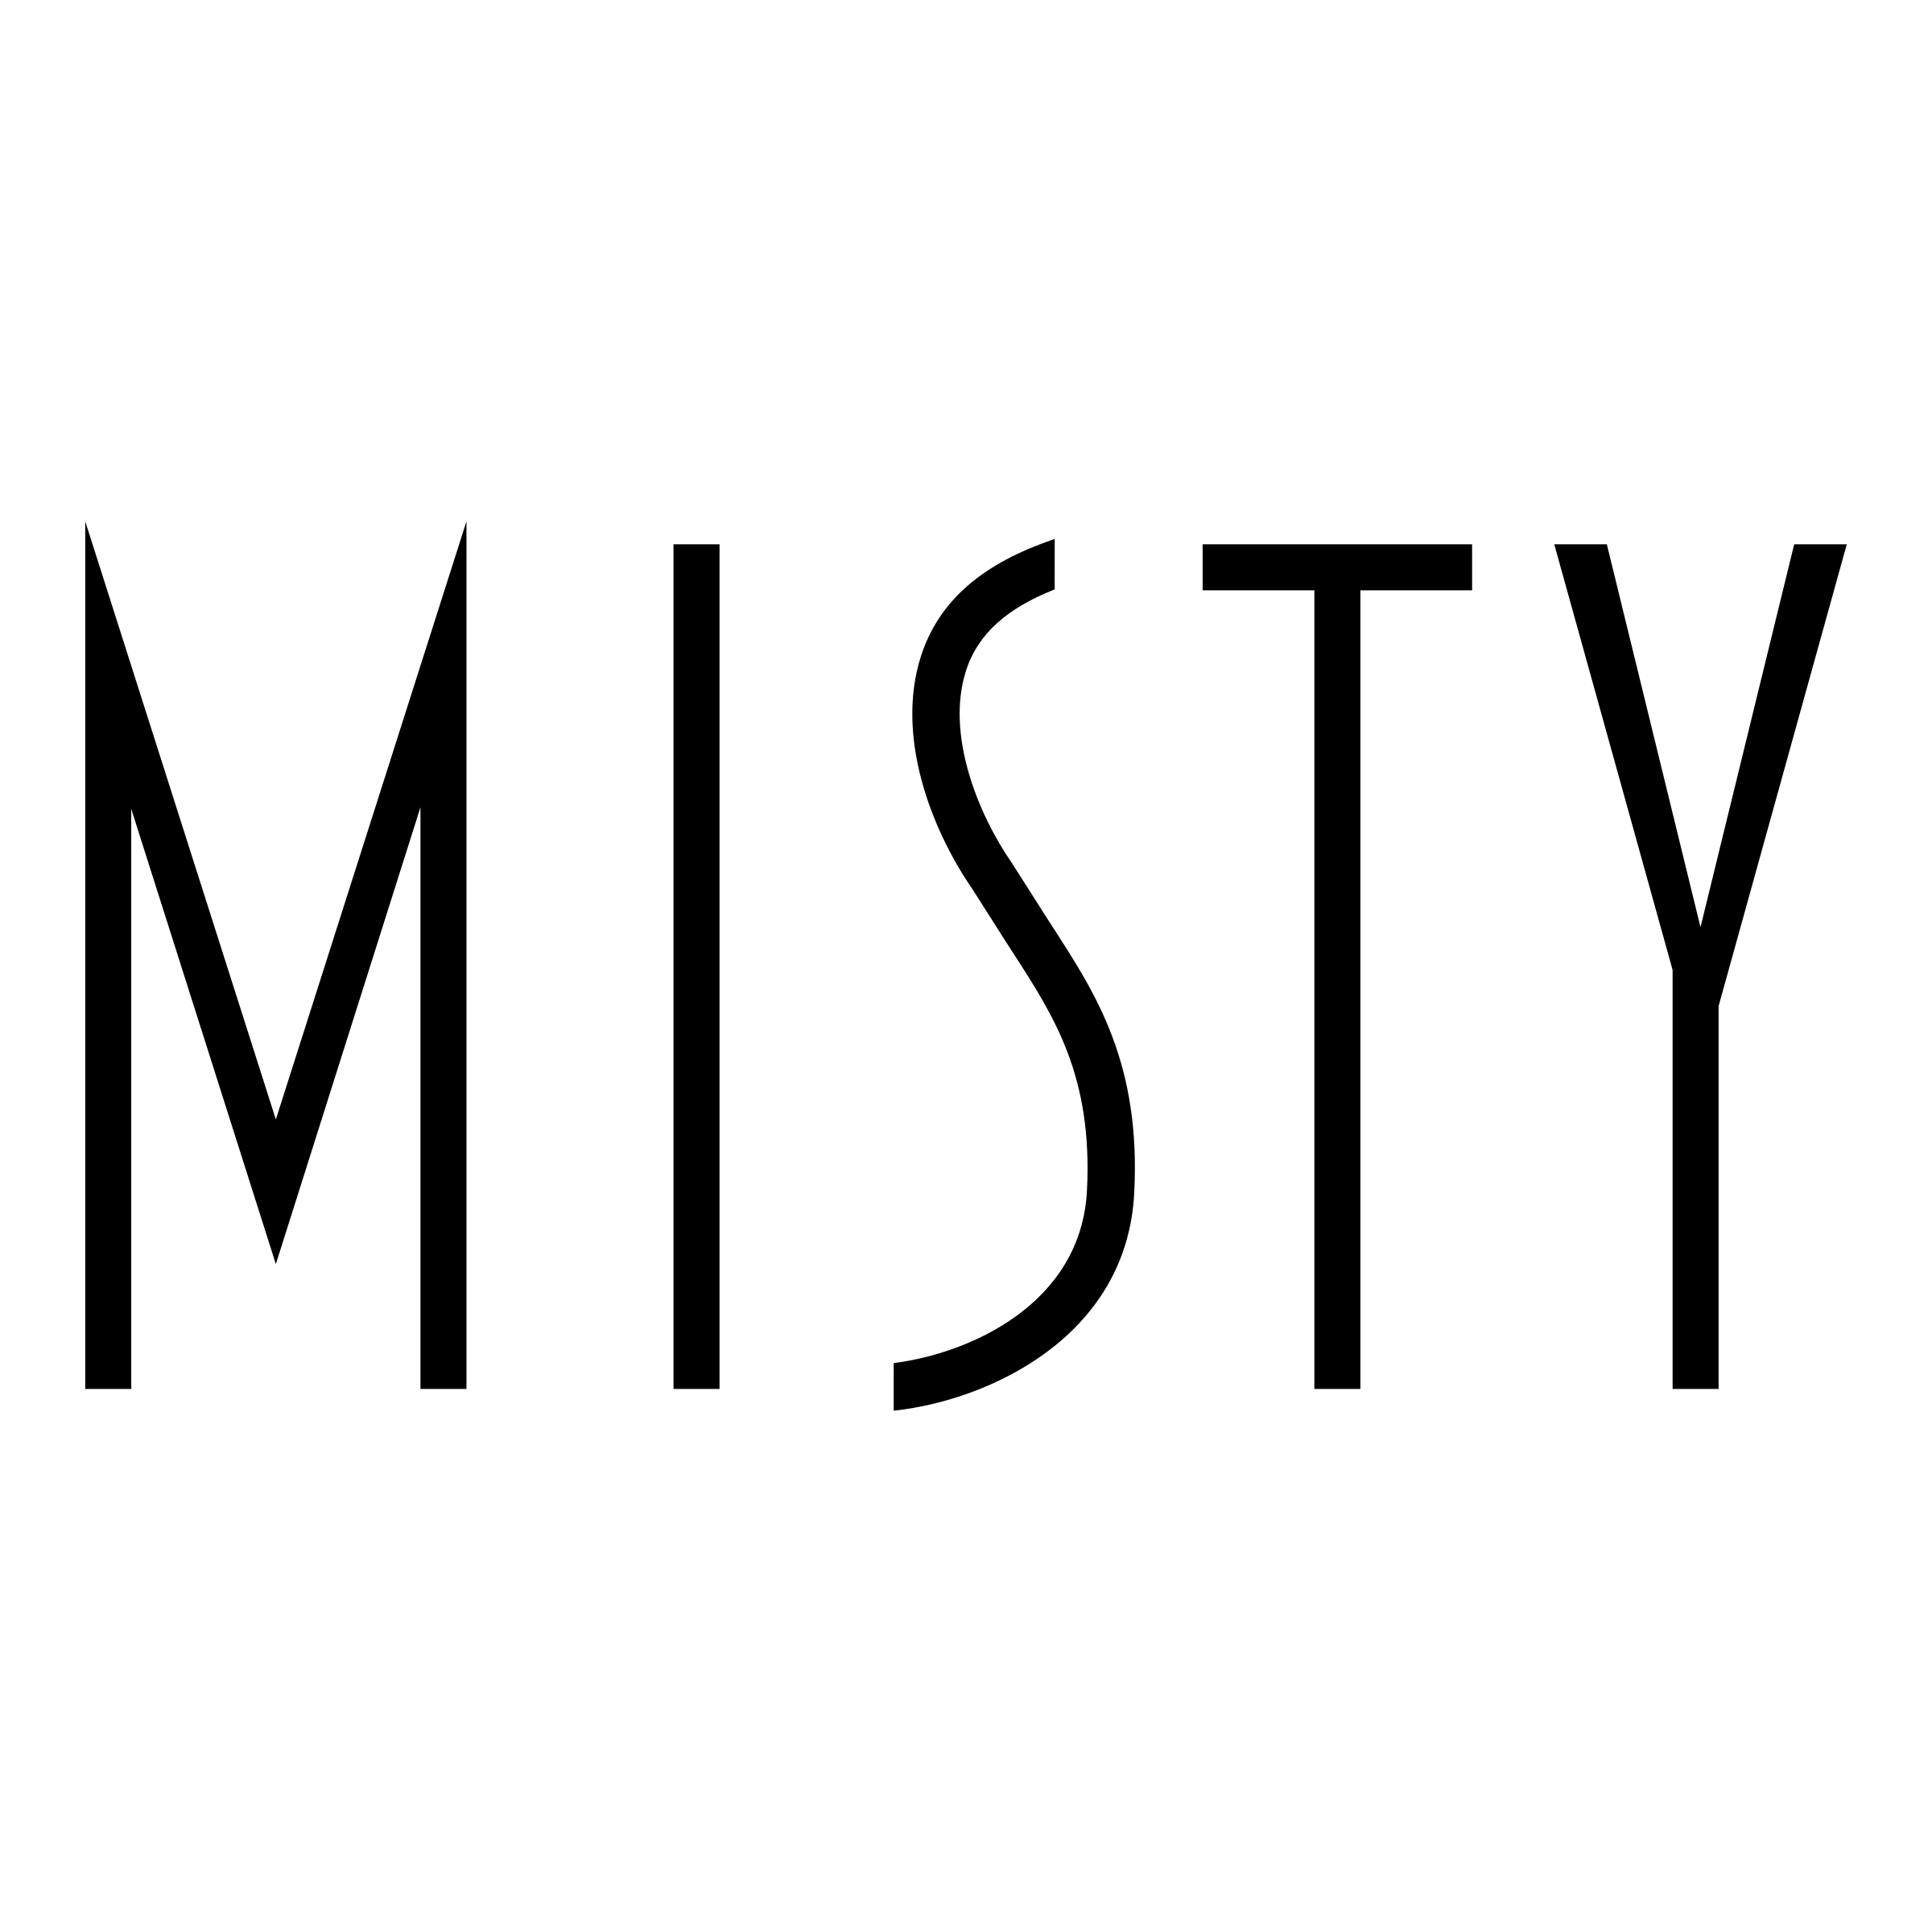 Misty Logo - Misty Logo PNG Transparent & SVG Vector - Freebie Supply